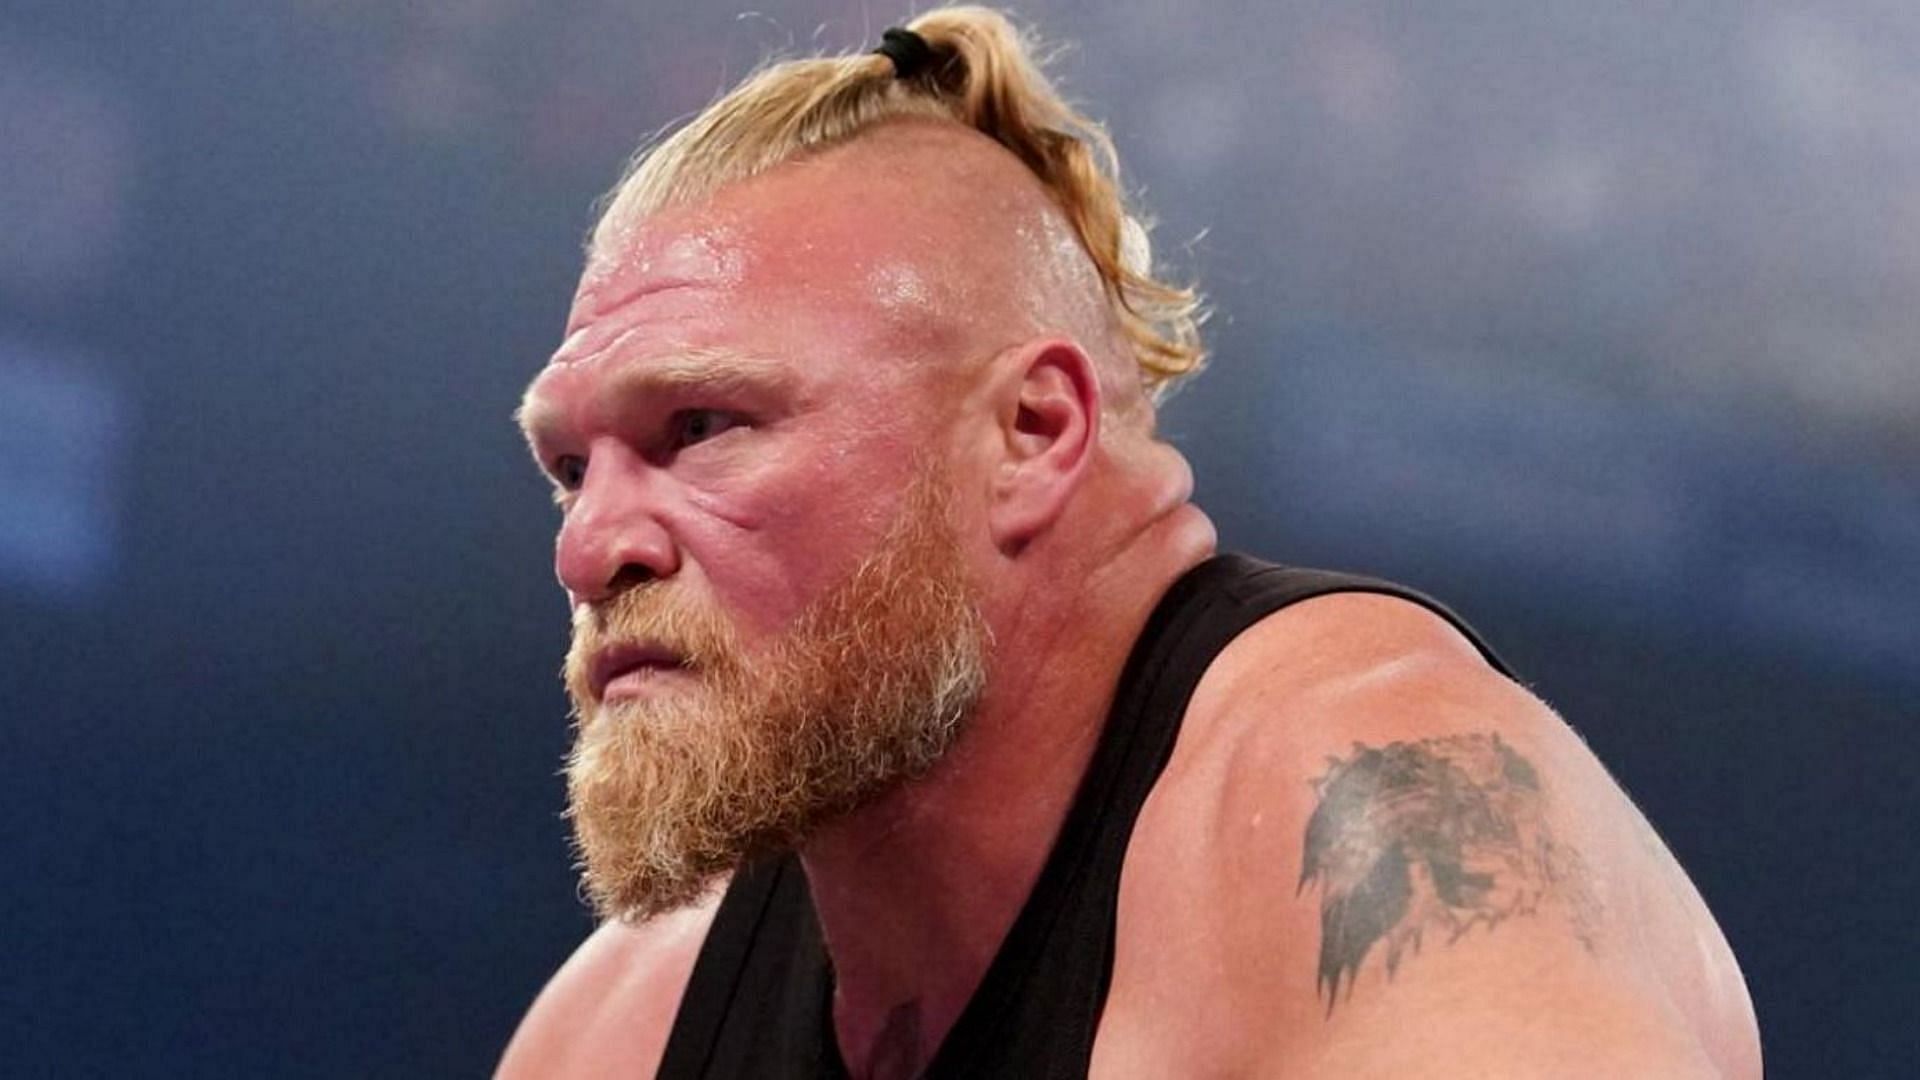 Brock Lesnar took a WWE hiatus following SummerSlam 2022 loss to Roman Reigns